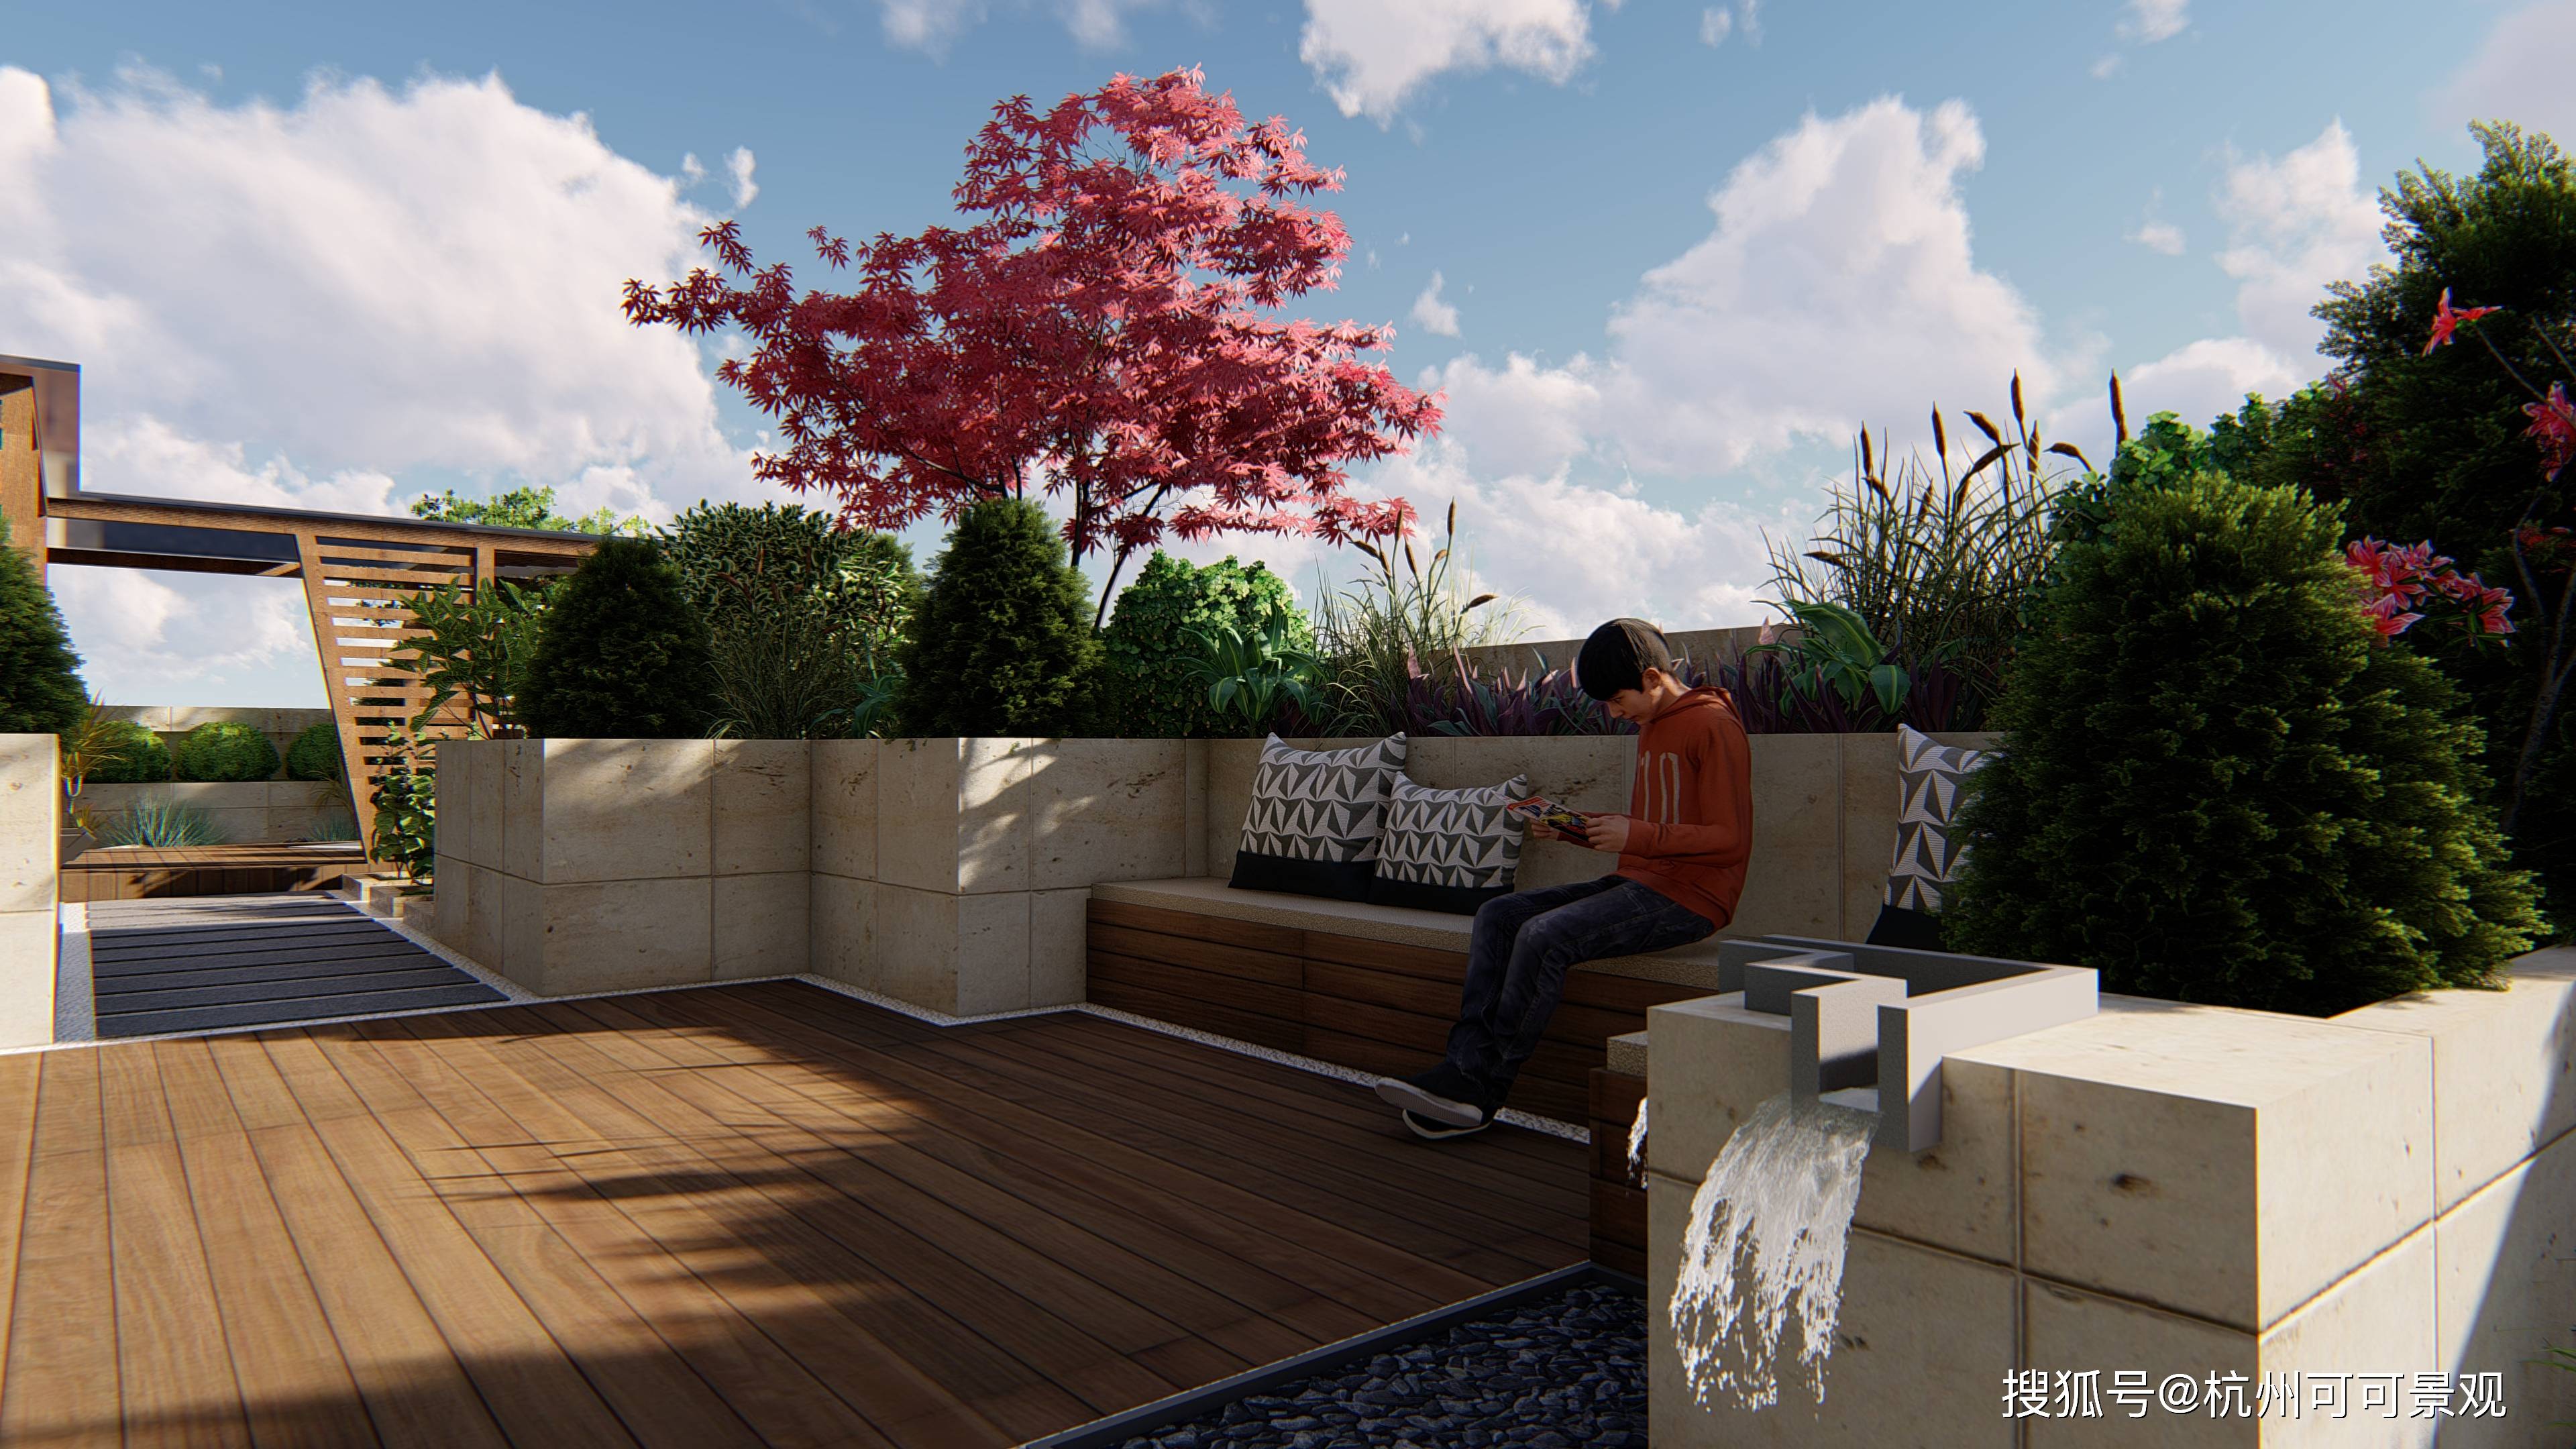 庭院设计:户外木平台设计,打造高品质休闲空间!低调但